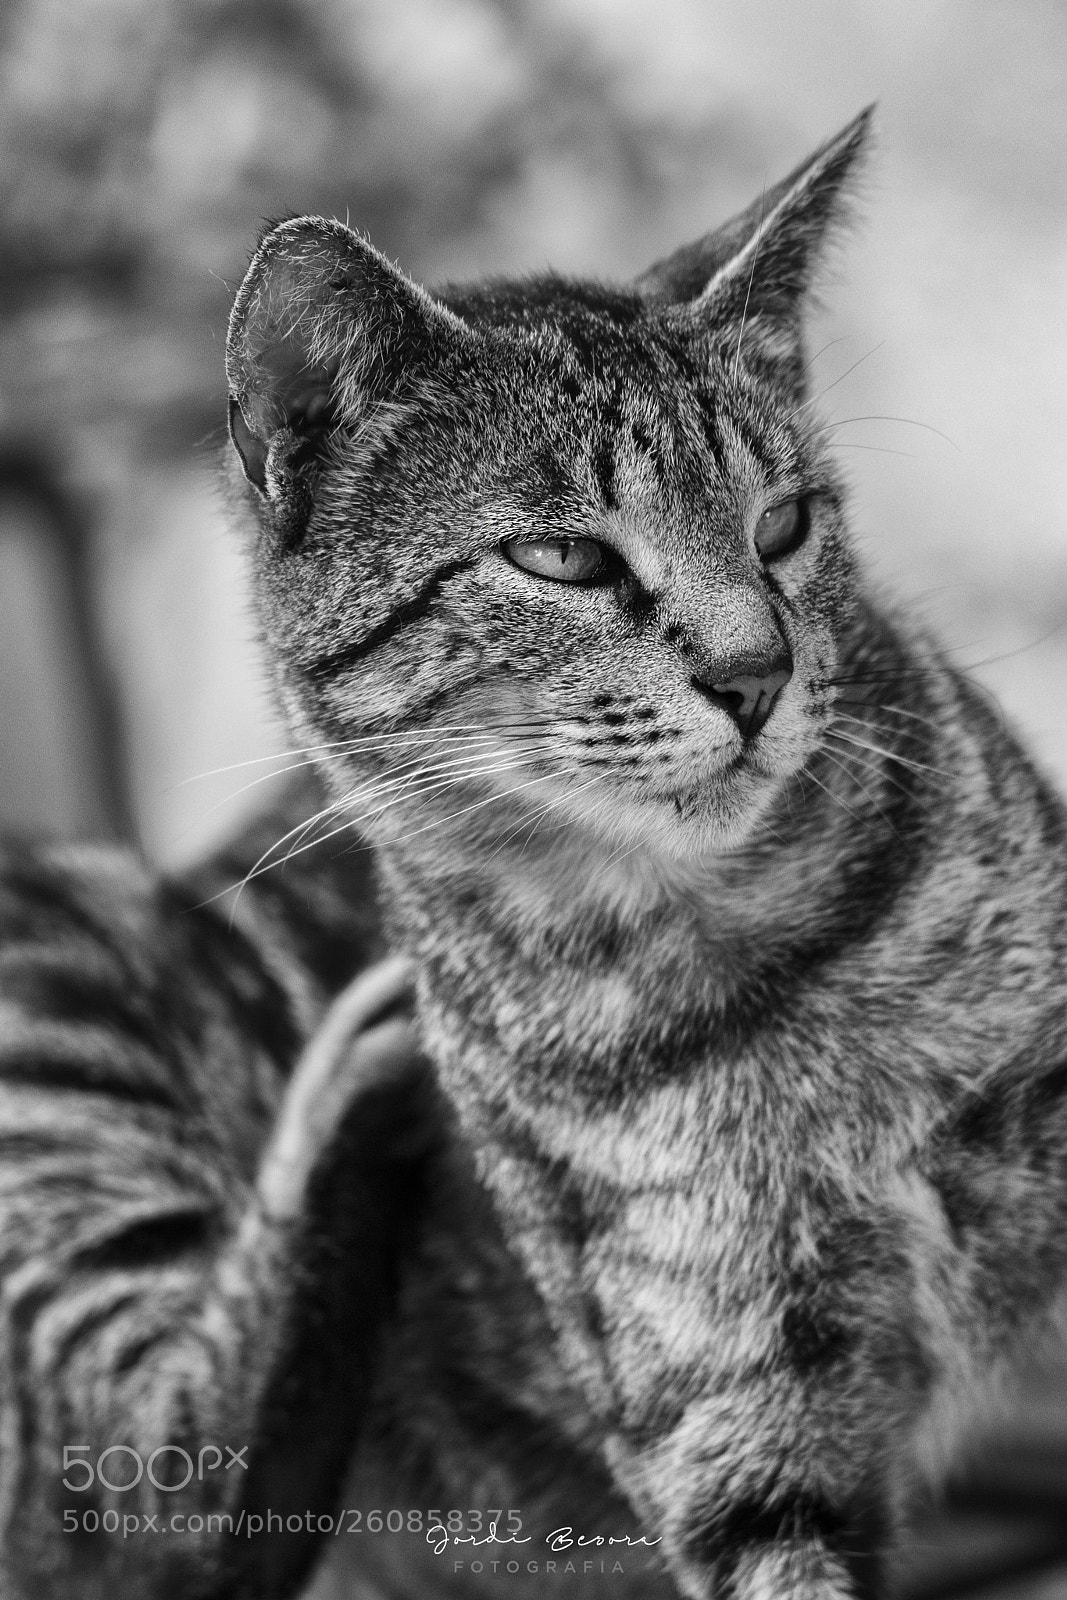 Nikon D5300 sample photo. Cat portrait photography